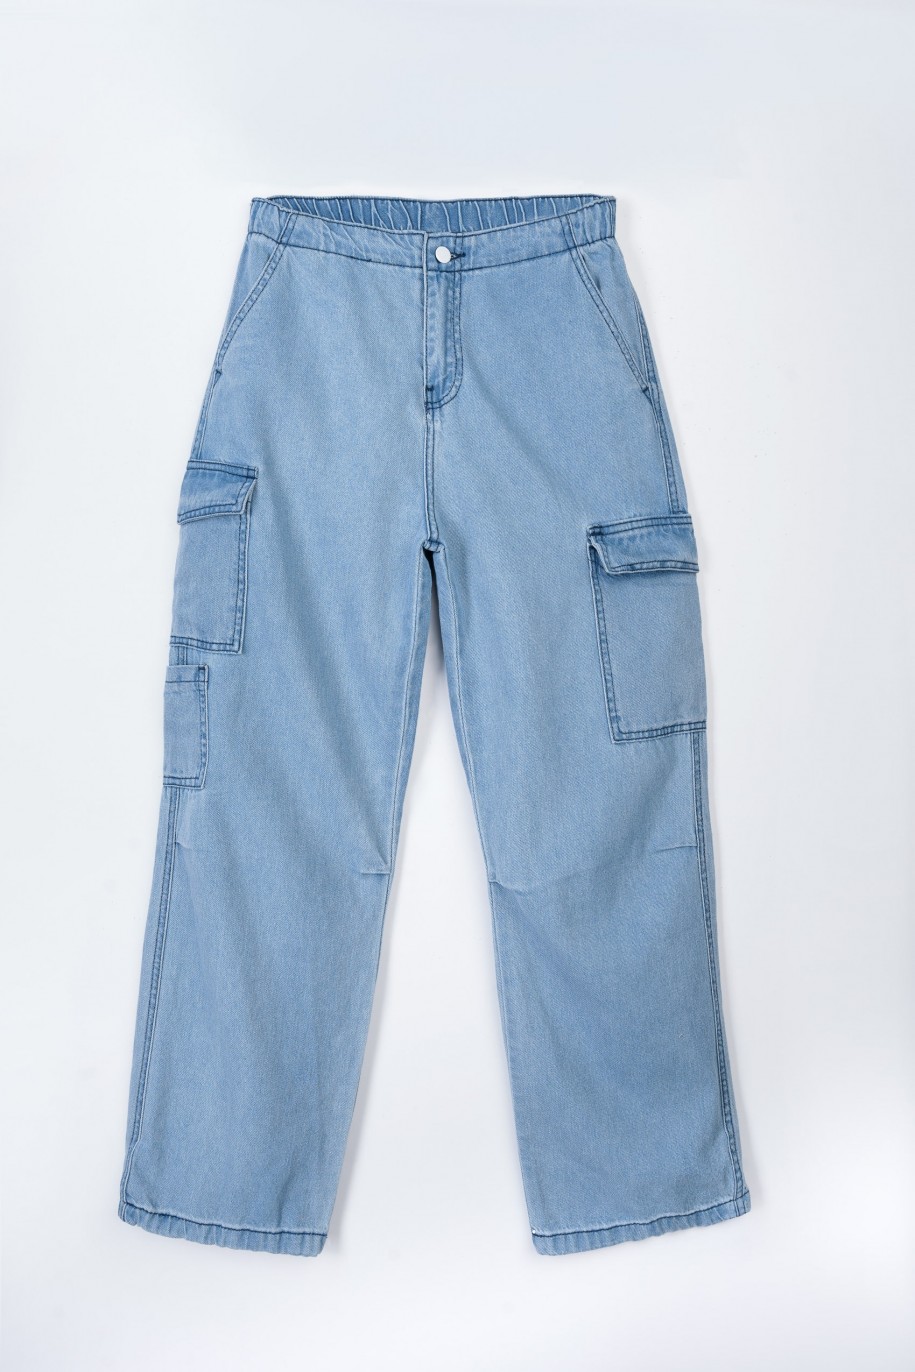 Niebieskie jeansowe spodnie typu cargo z przestrzennymi kieszeniami - 47565